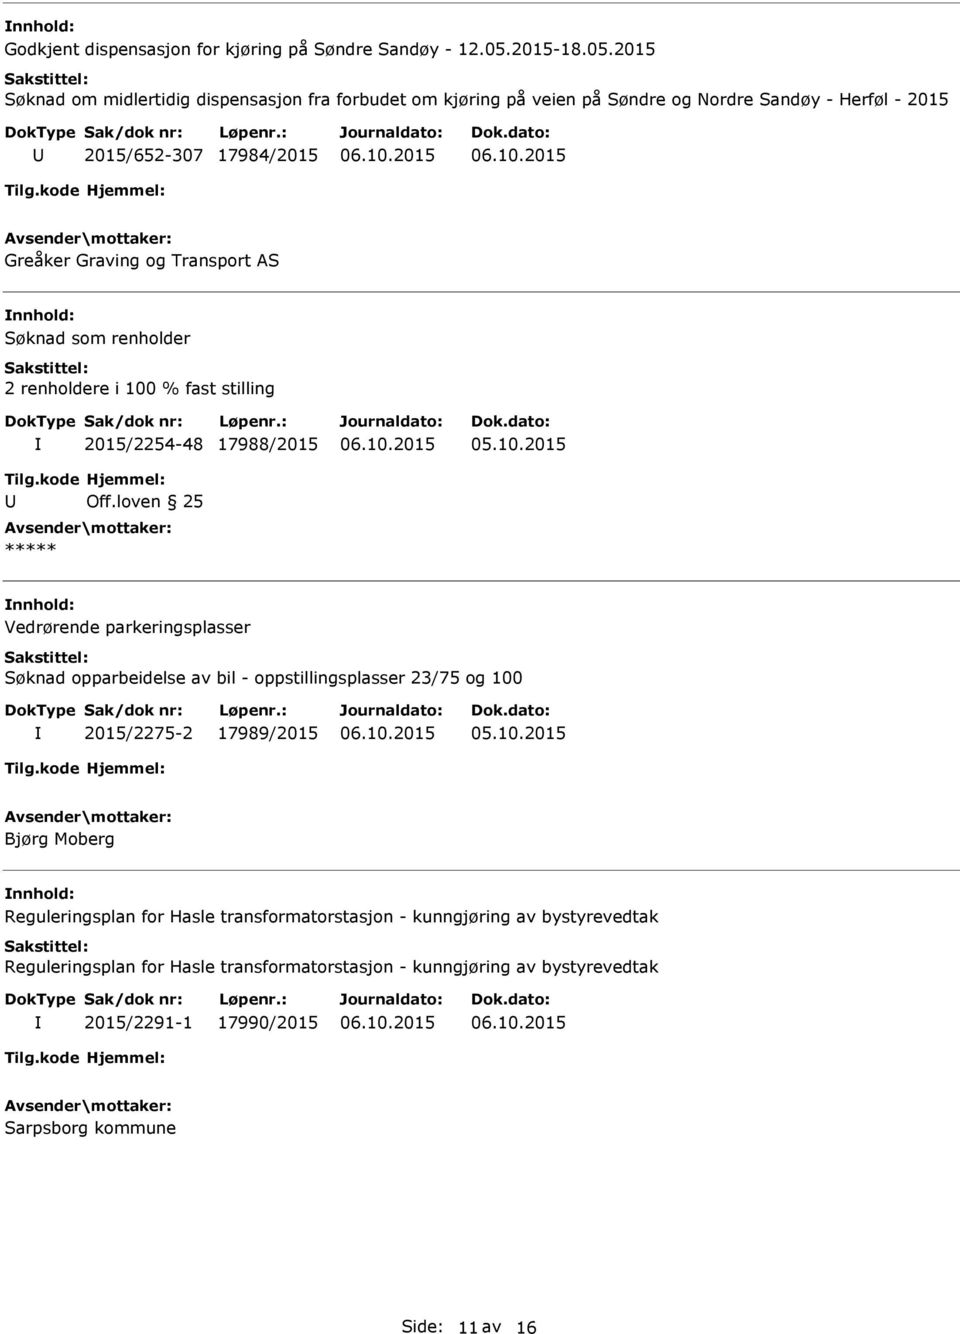 2015 Søknad om midlertidig dispensasjon fra forbudet om kjøring på veien på Søndre og Nordre Sandøy - Herføl - 2015 2015/652-307 17984/2015 Greåker